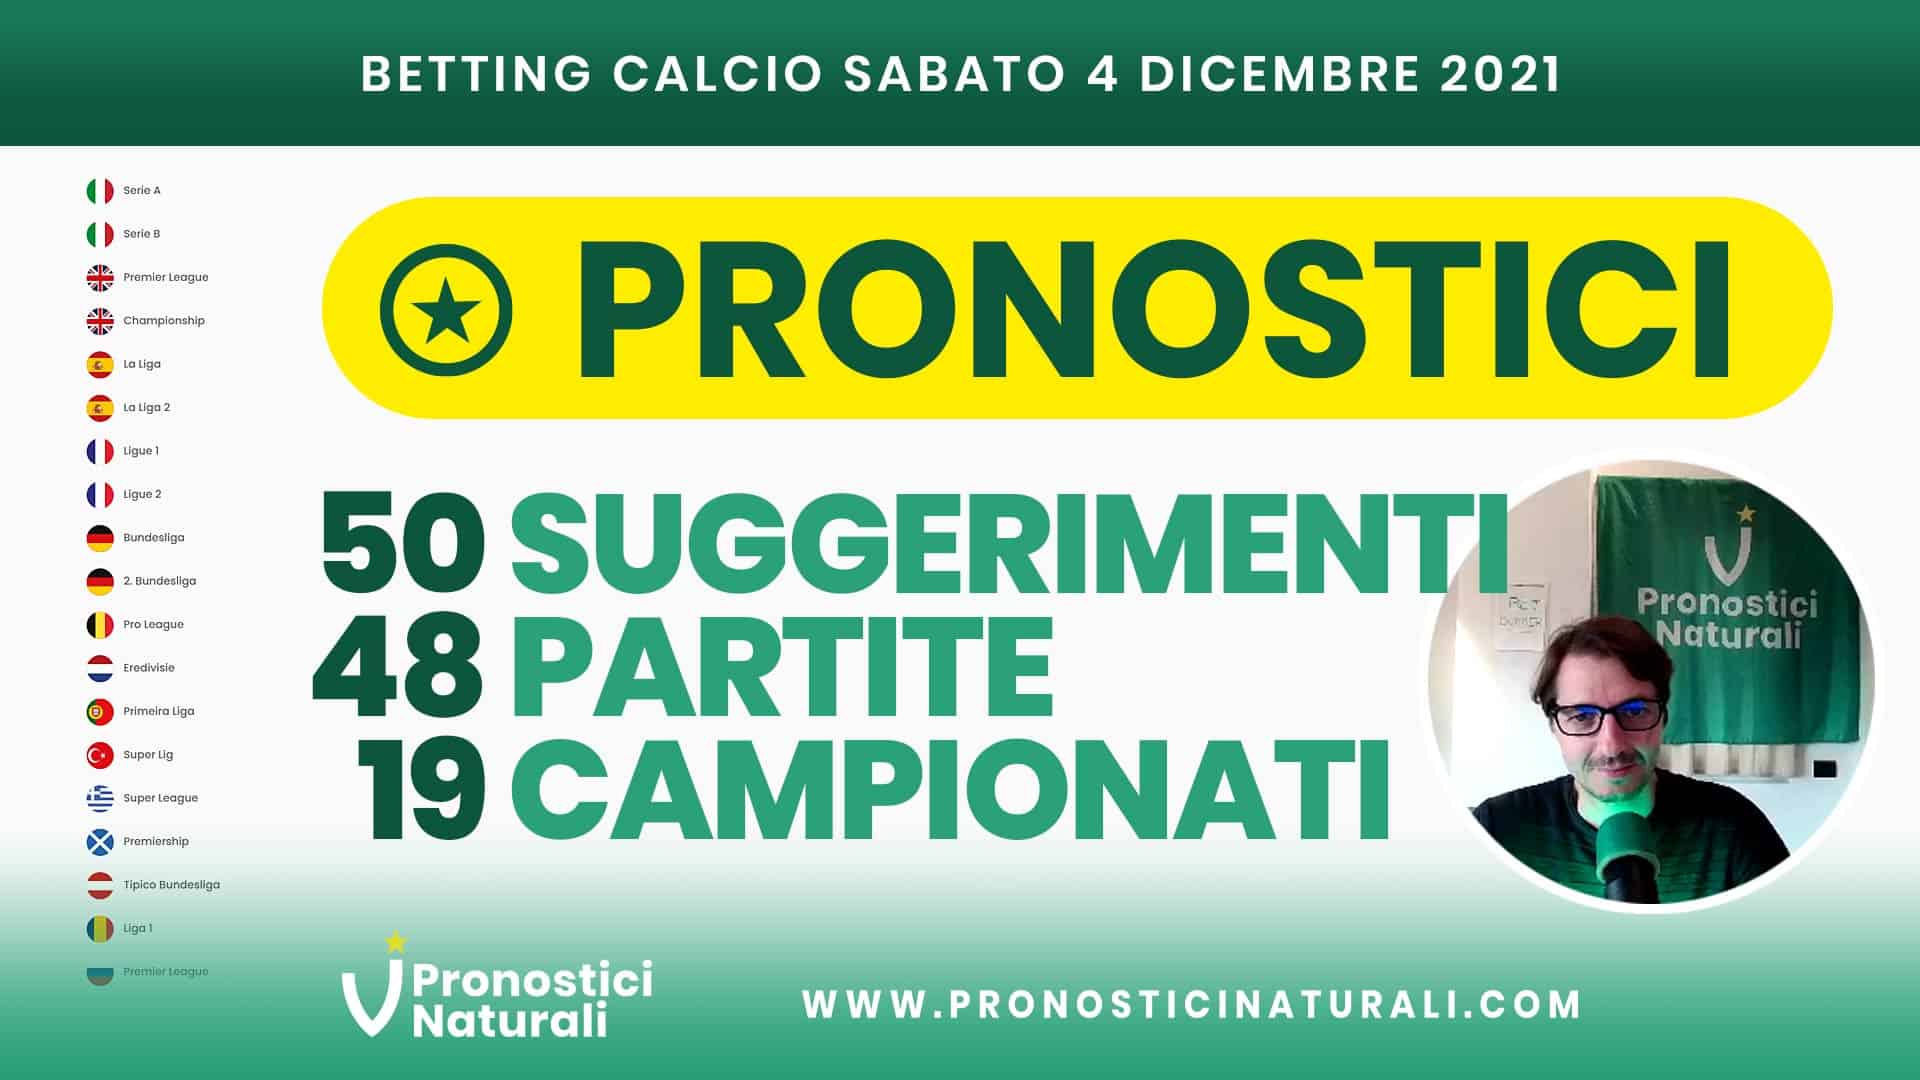 Pronostici Naturali Video Analisi Scommesse Betting Calcio Analisi Pre Partite Sabato 4 Dicembre 2021